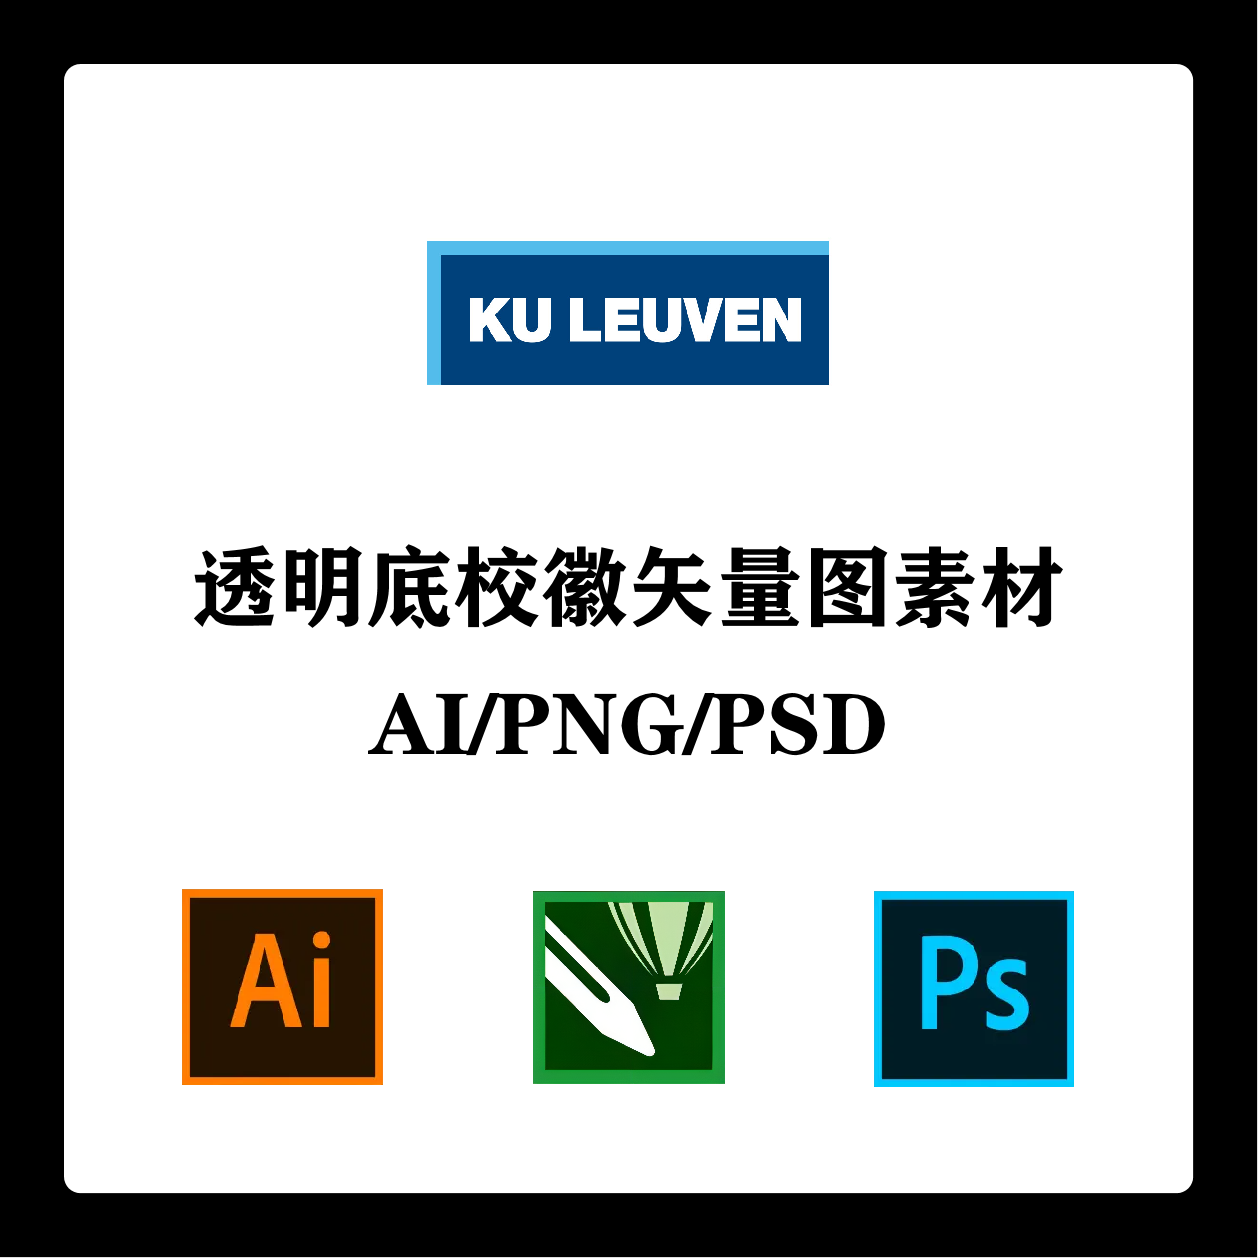 比利时鲁汶大学校徽高清无水印LOGO/PPT标识AI矢量设计PSD